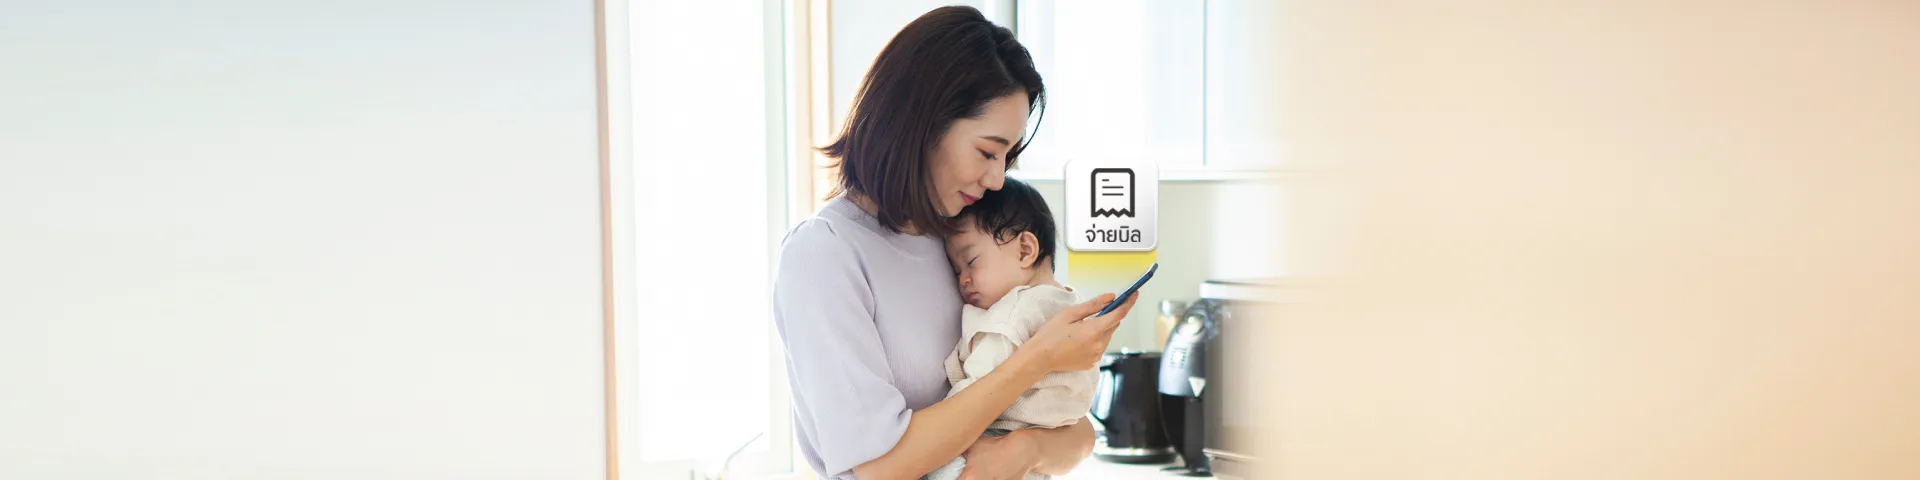 หมดปัญหากวนใจเรื่องการจ่ายบิล เพิ่มเวลาให้กับครอบครัว ด้วยผู้ช่วยบน KMA krungsri app